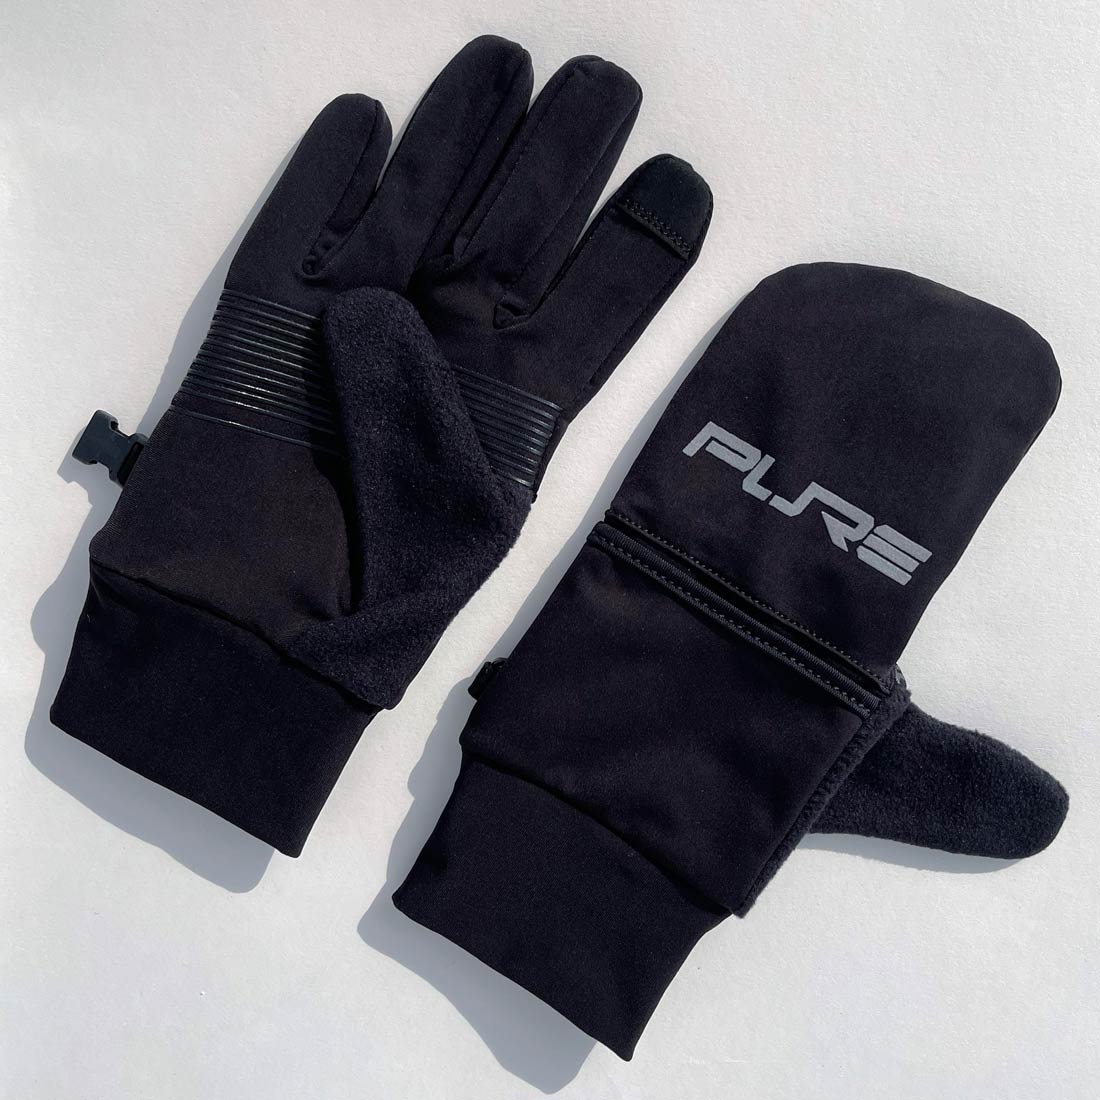 Convertible Running Gloves/Mittens